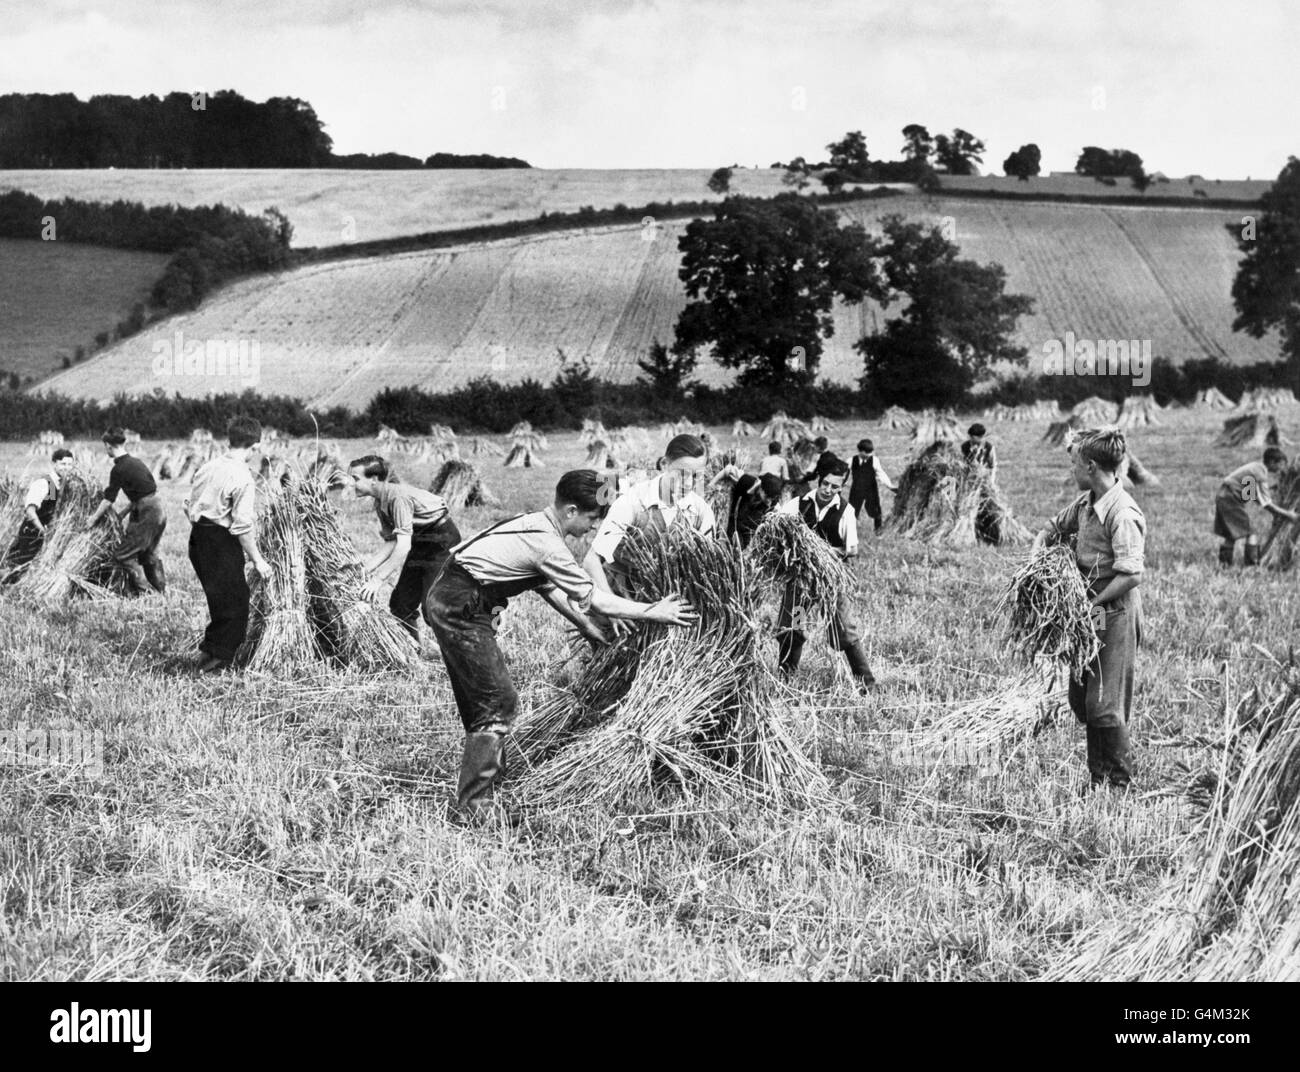 Des garçons de Battersea à Londres aident à récolter des champs dans une ferme de Buckinghamshire pendant la Seconde Guerre mondiale sous la supervision du révérend J. A. Thompson du Youth Club. Banque D'Images